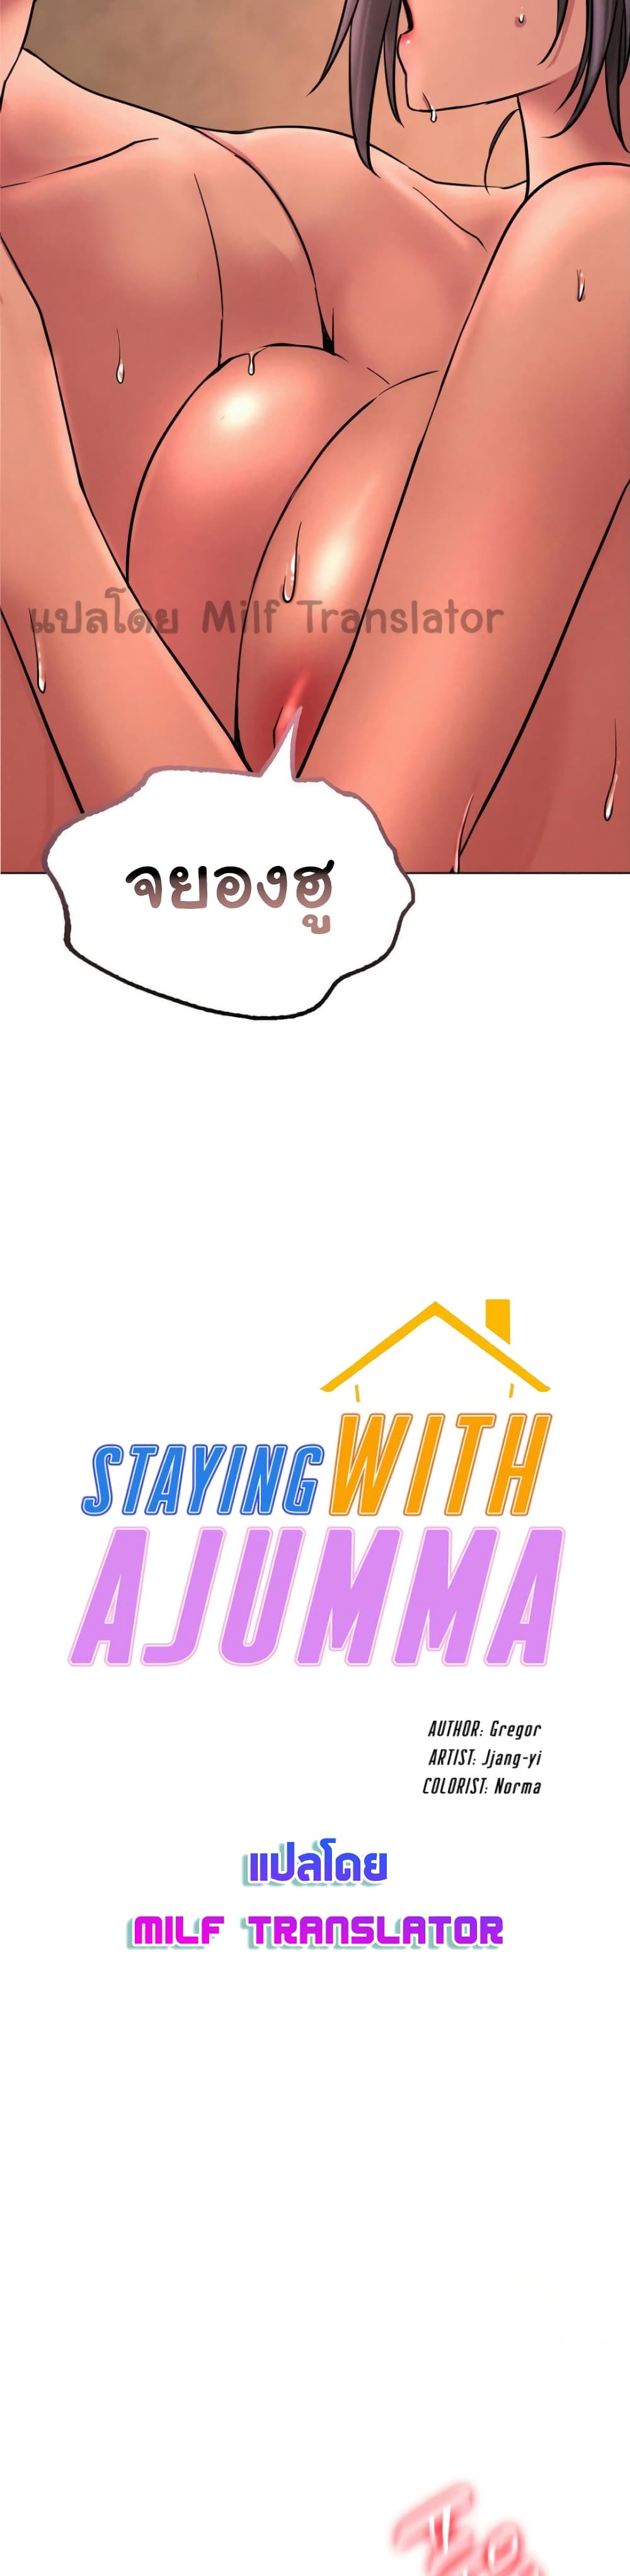 Staying with Ajumma 31-31